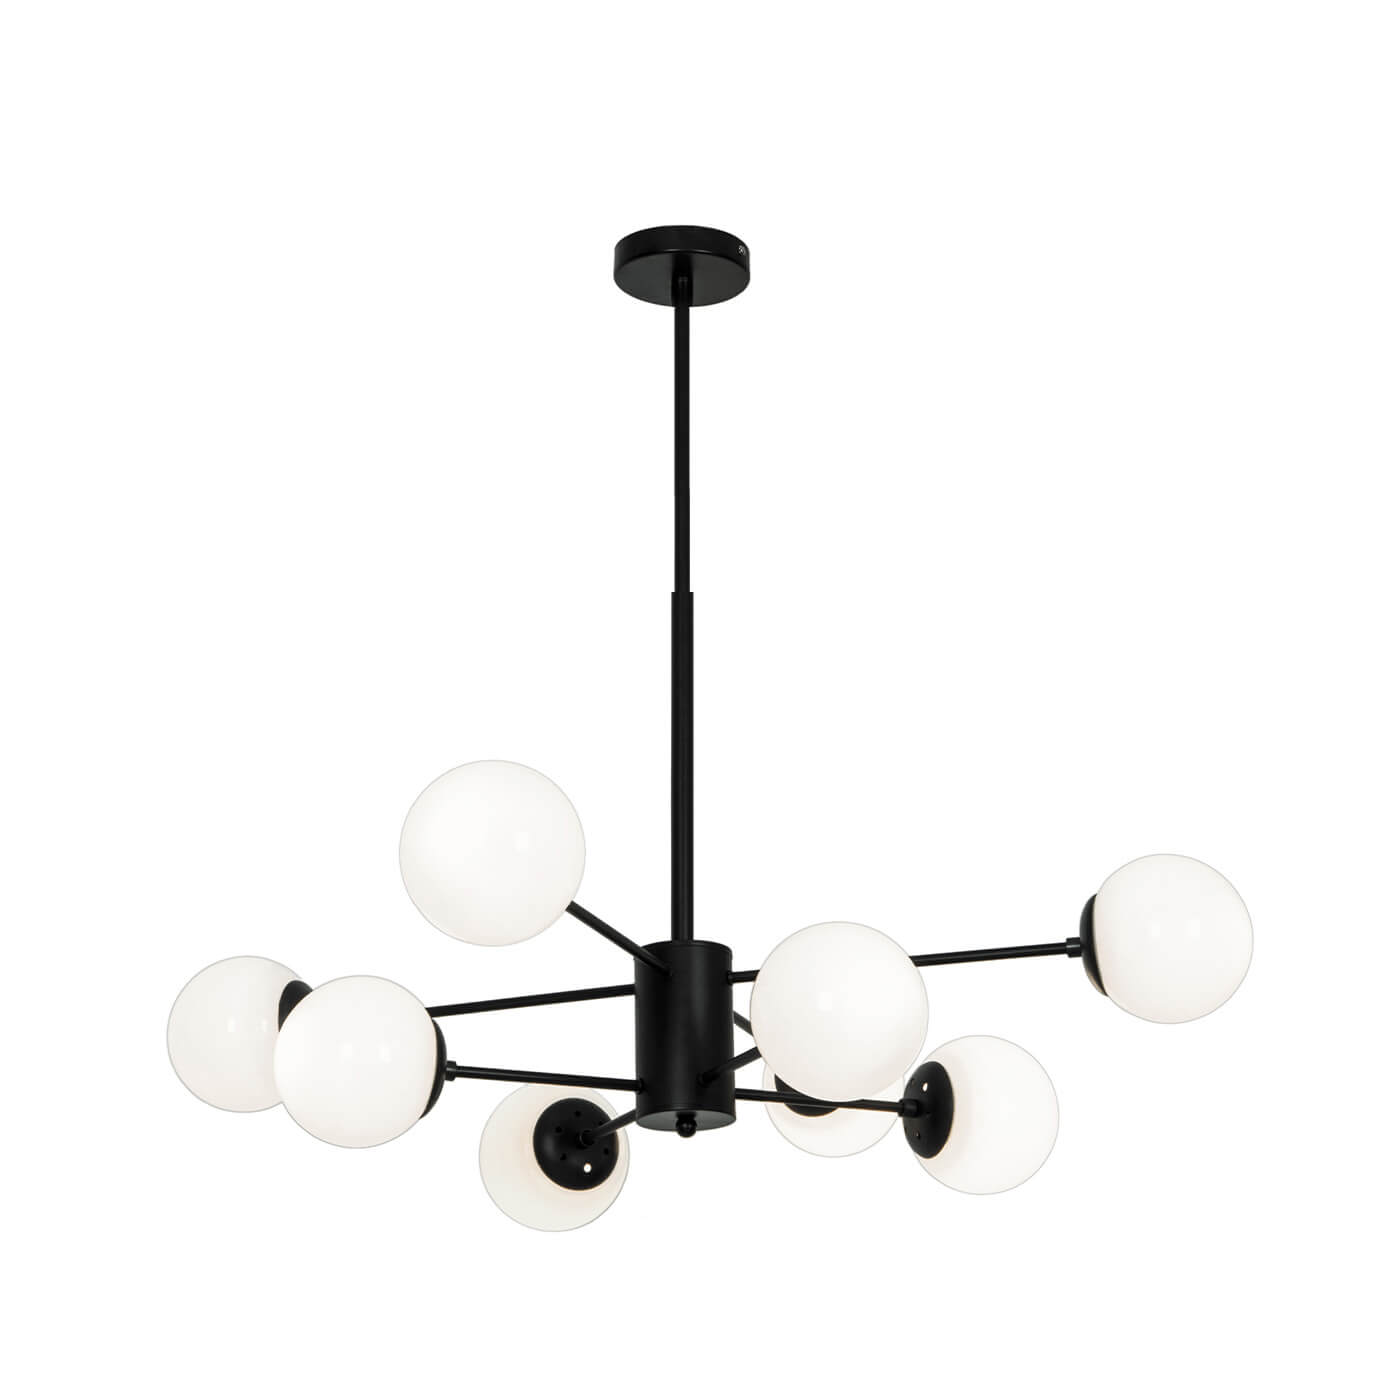 Cauti o lampa suspendata neagra ANOUK S8 cu globuri de sticla, design modern, minimalist, pentru living, dining sau dormitor din colectia de lustre si candelabre Domicilio?